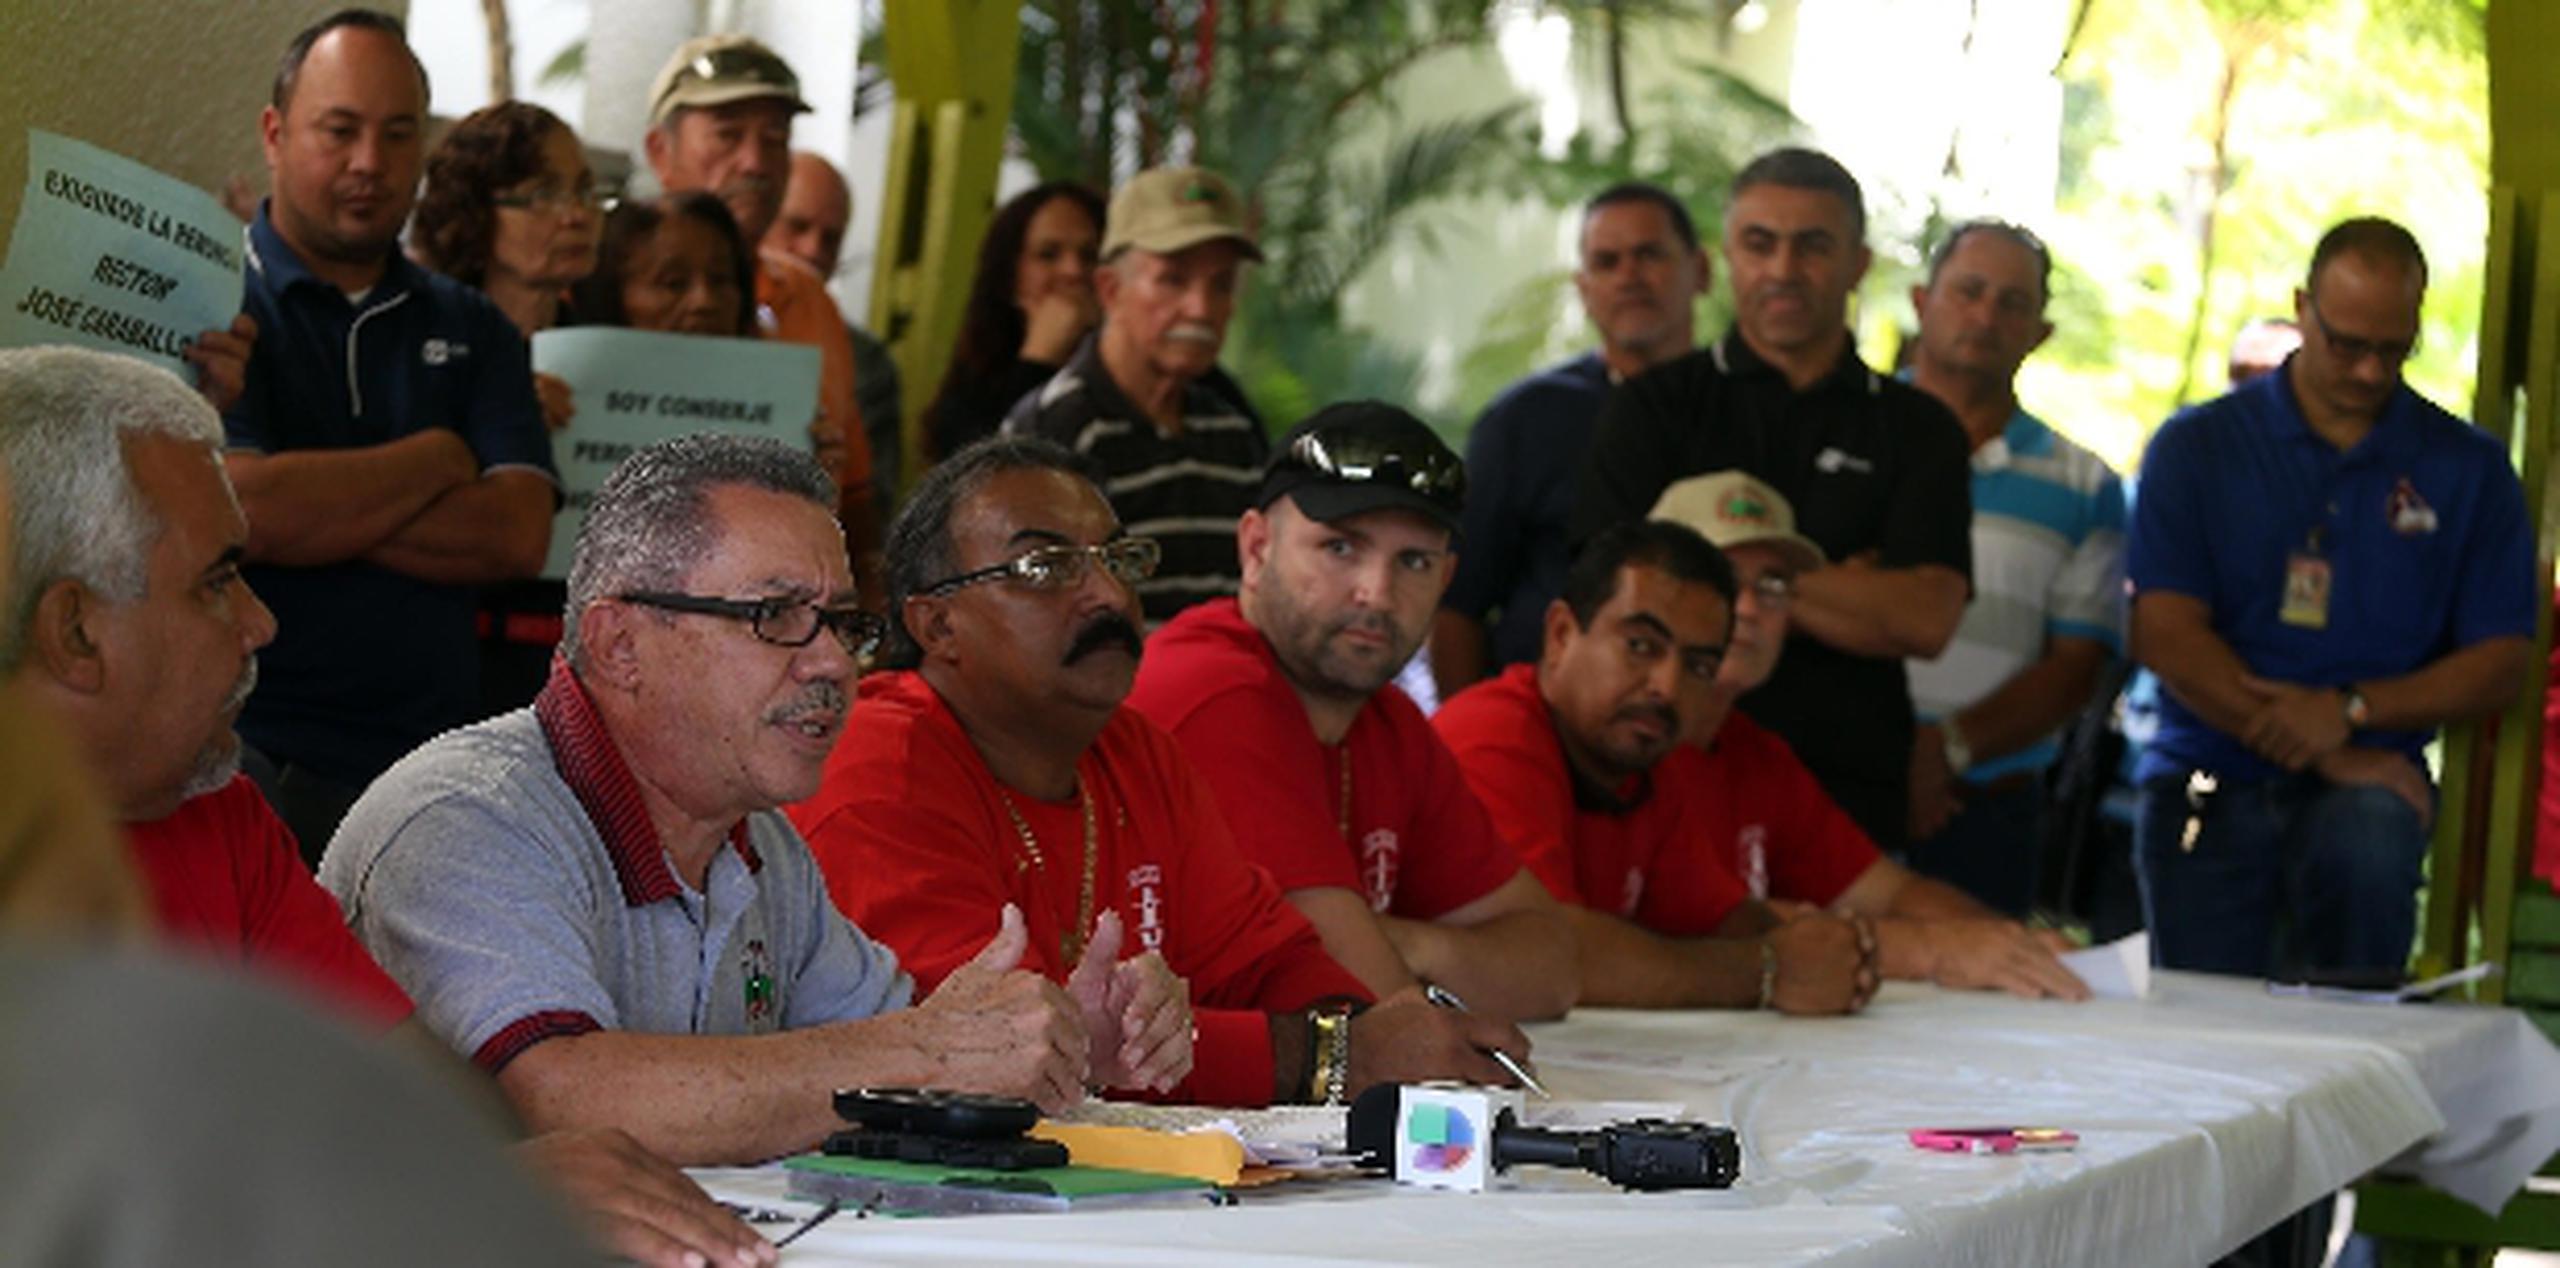 El presidente del Sindicato de Trabajadores de la UPR, David Muñoz (camisa gris) solicitó sanciones disciplinarias contra los empleados responsables de los actos vandálicos.  (juan.alicea@gfrmedia.com)